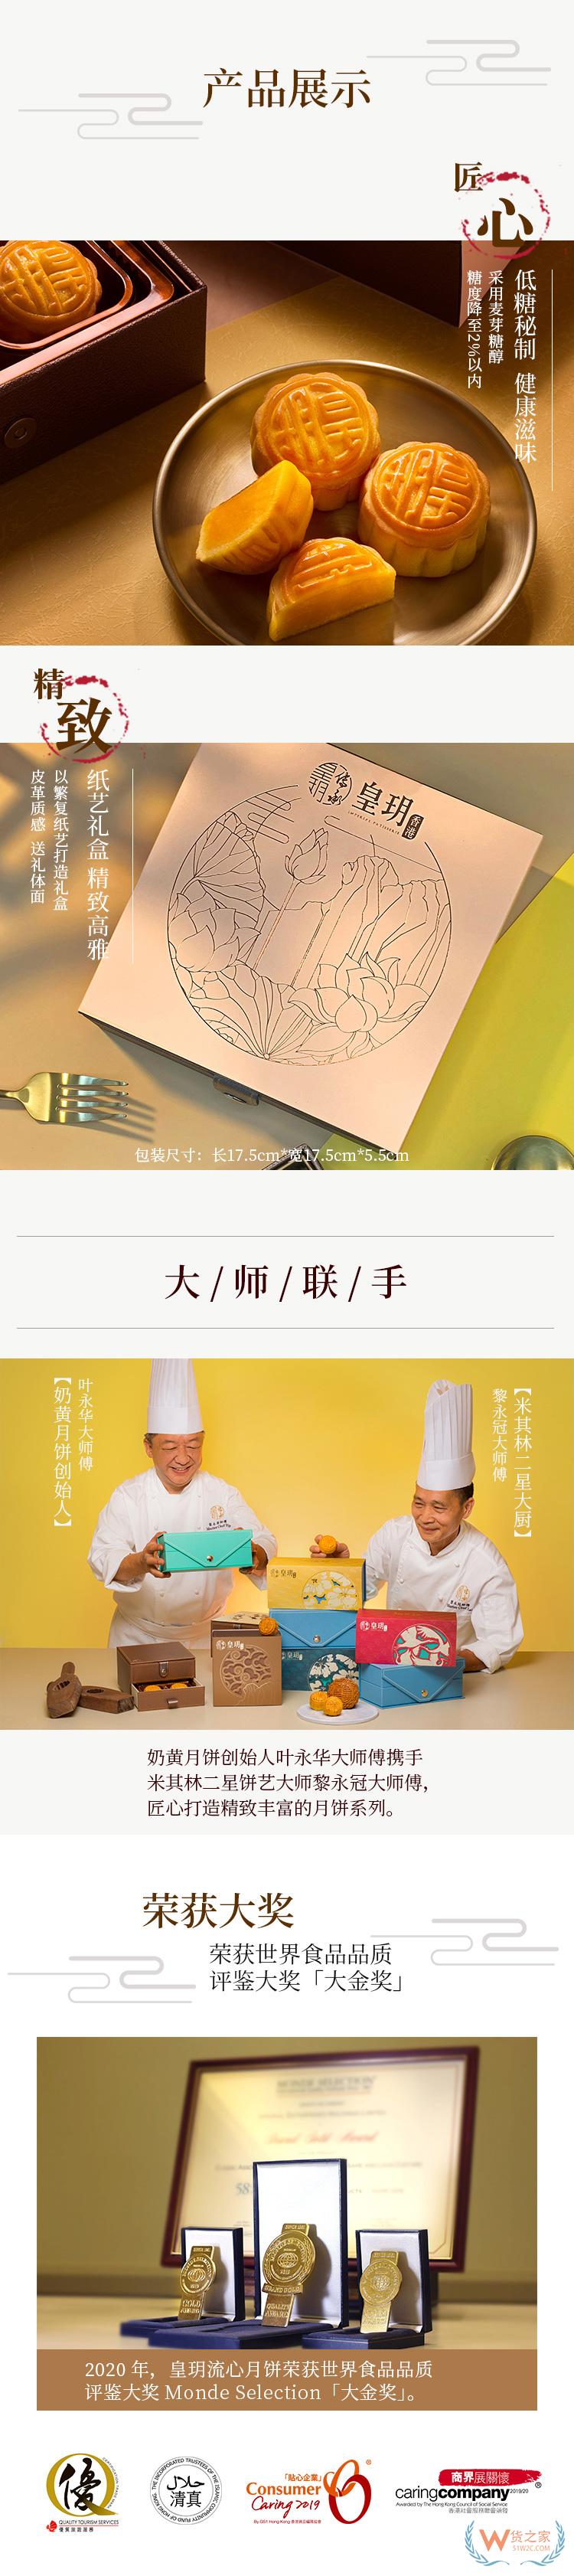 香港皇玥低糖迷你奶黄月饼(低糖系列)—货之家